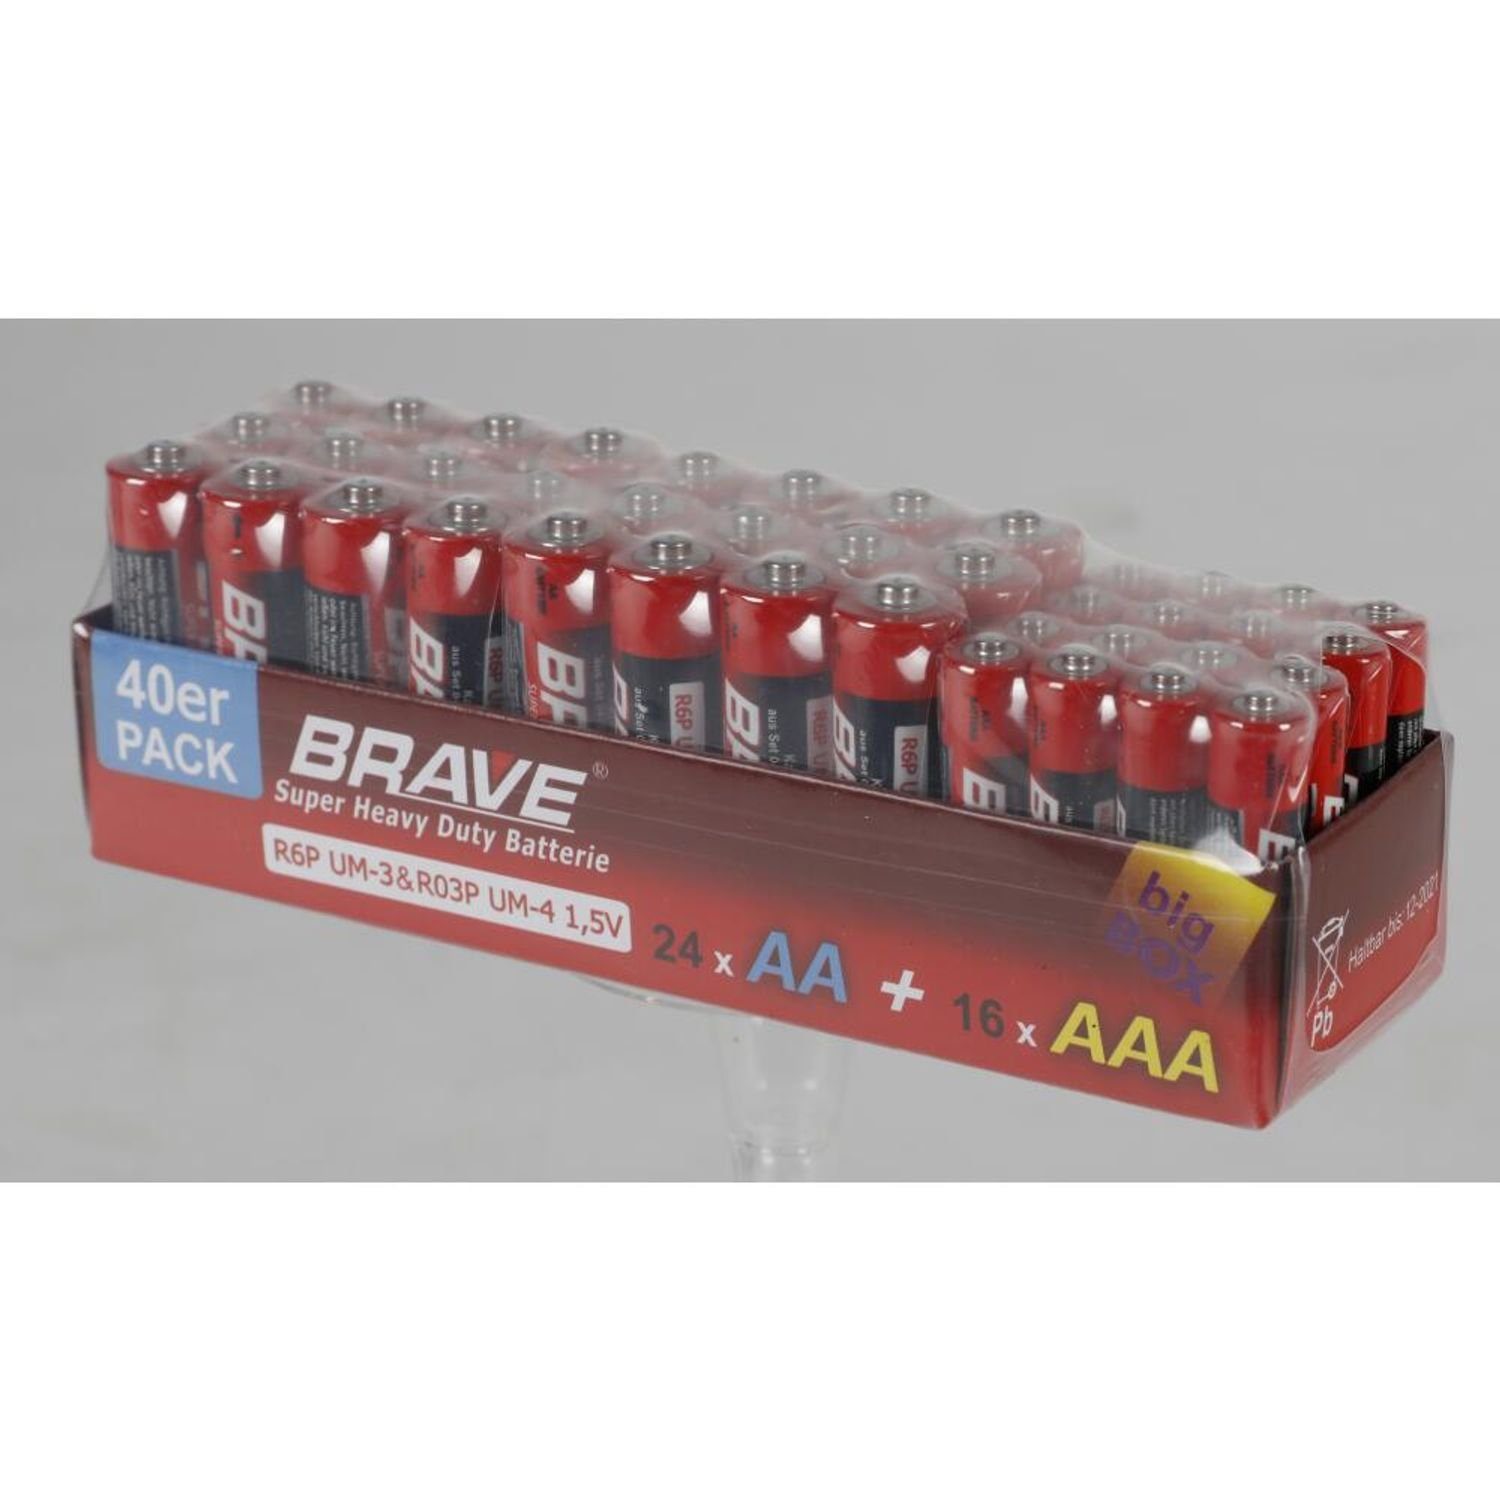 Stück Batterie, (960 960 40er-Pack St) & AAA Batterien Großpackung Brave AA BURI 24x